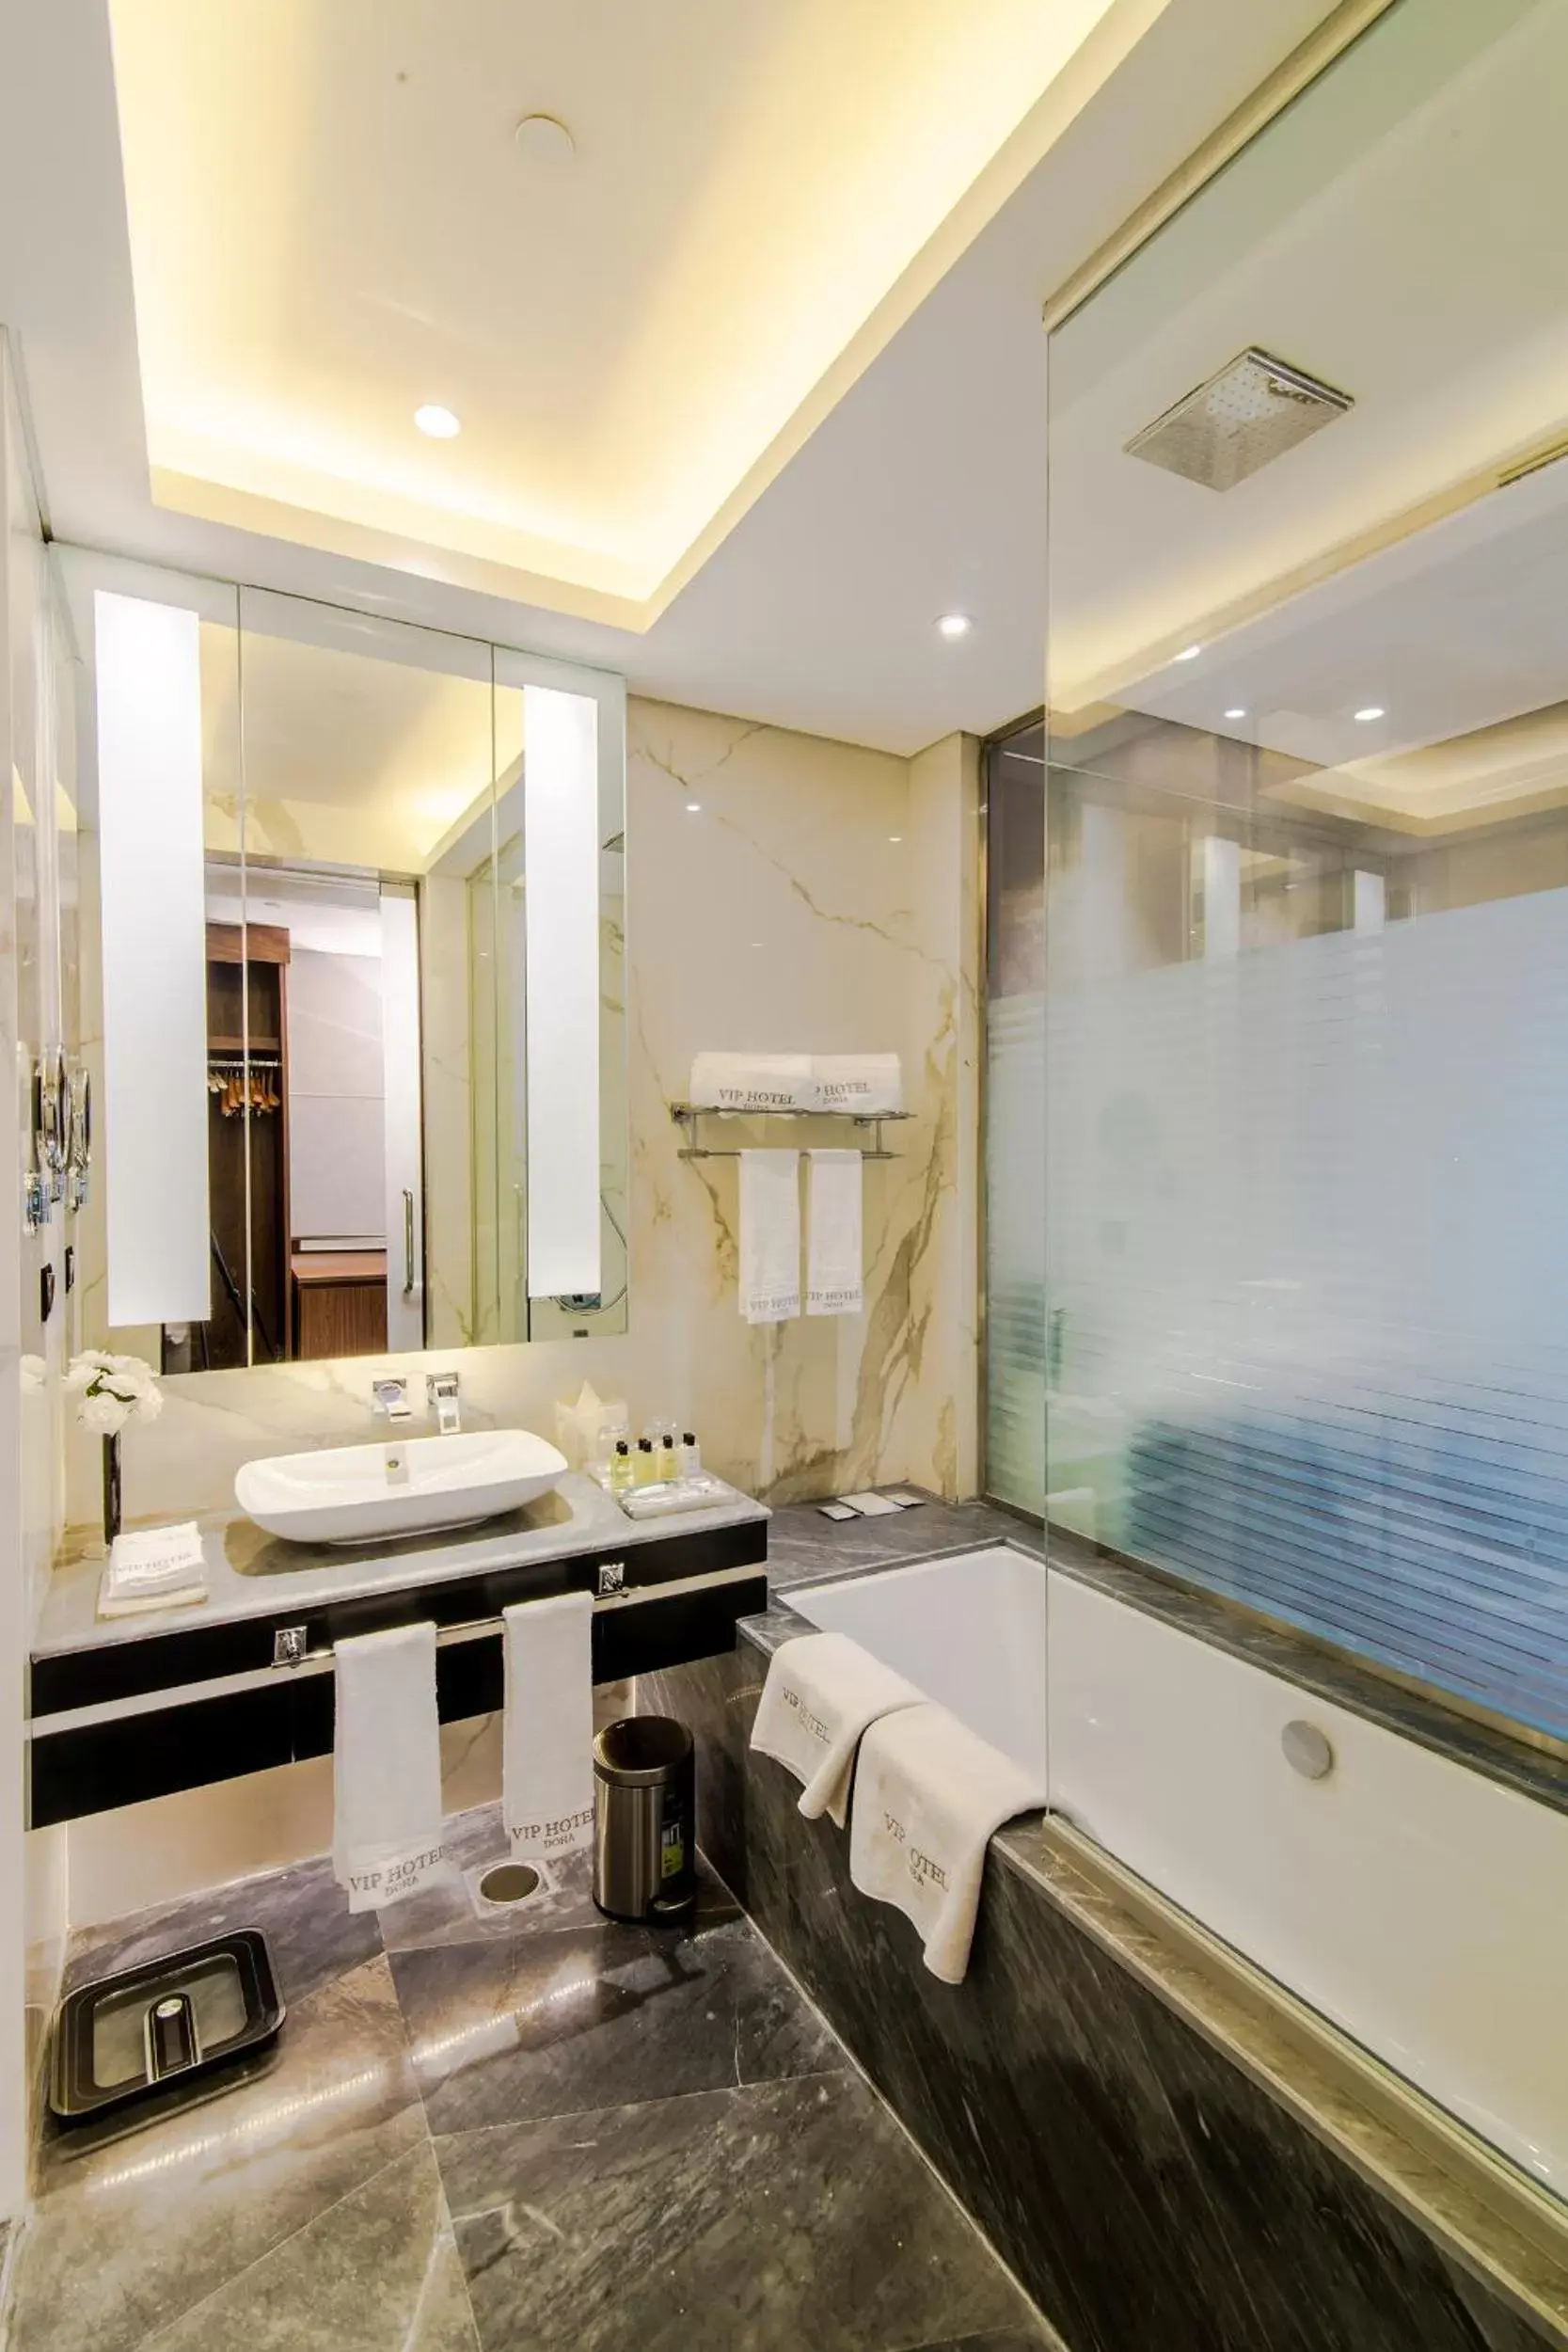 Bathroom in VIP Hotel Doha Qatar